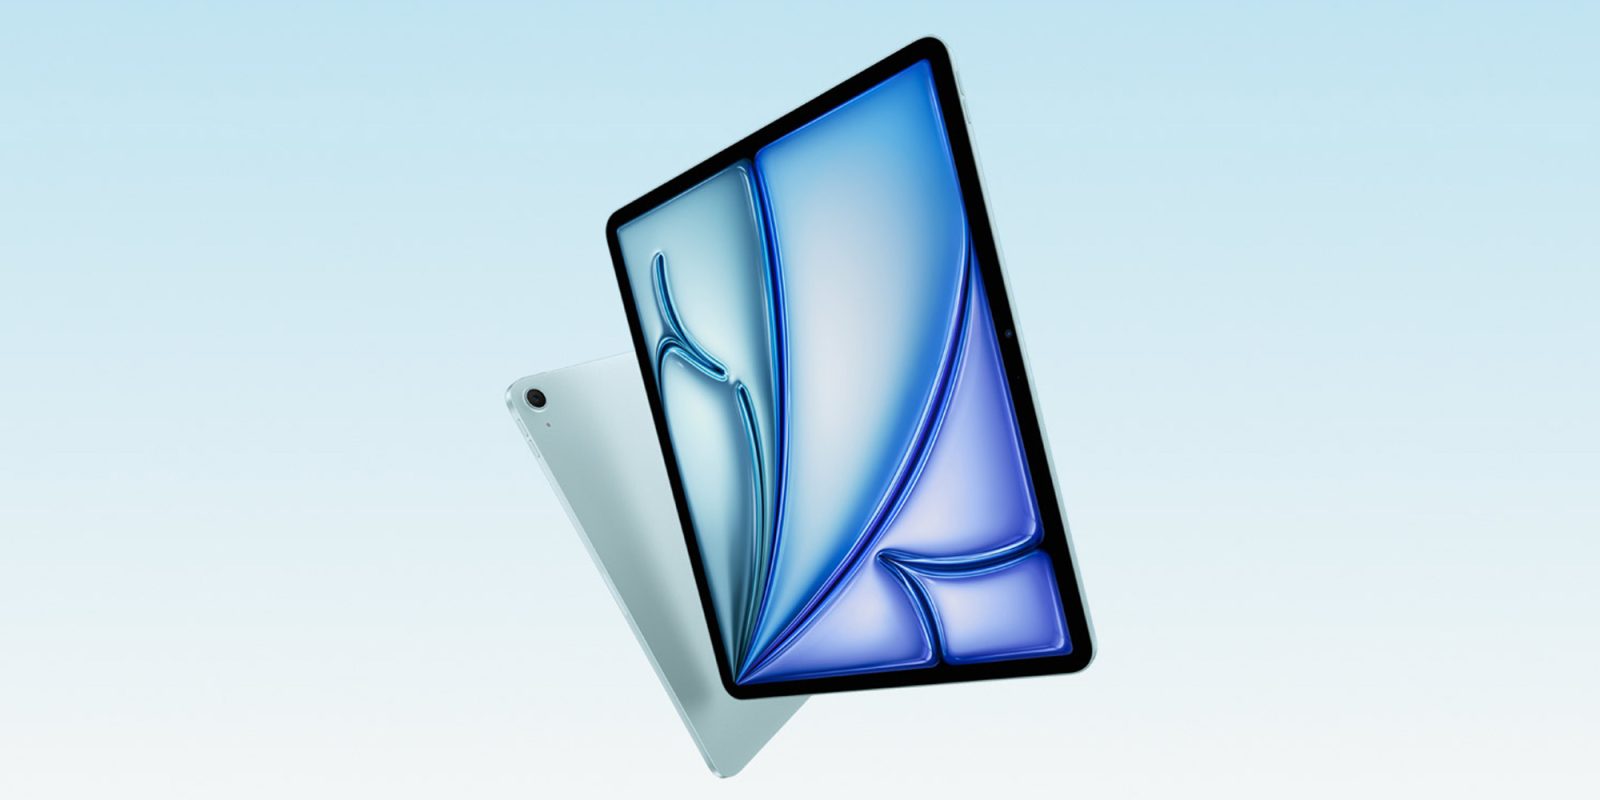 Apple afirma que el nuevo iPad Air M2 ha sido degradado y ahora tiene una GPU de 9 núcleos en lugar de una de 10 núcleos.